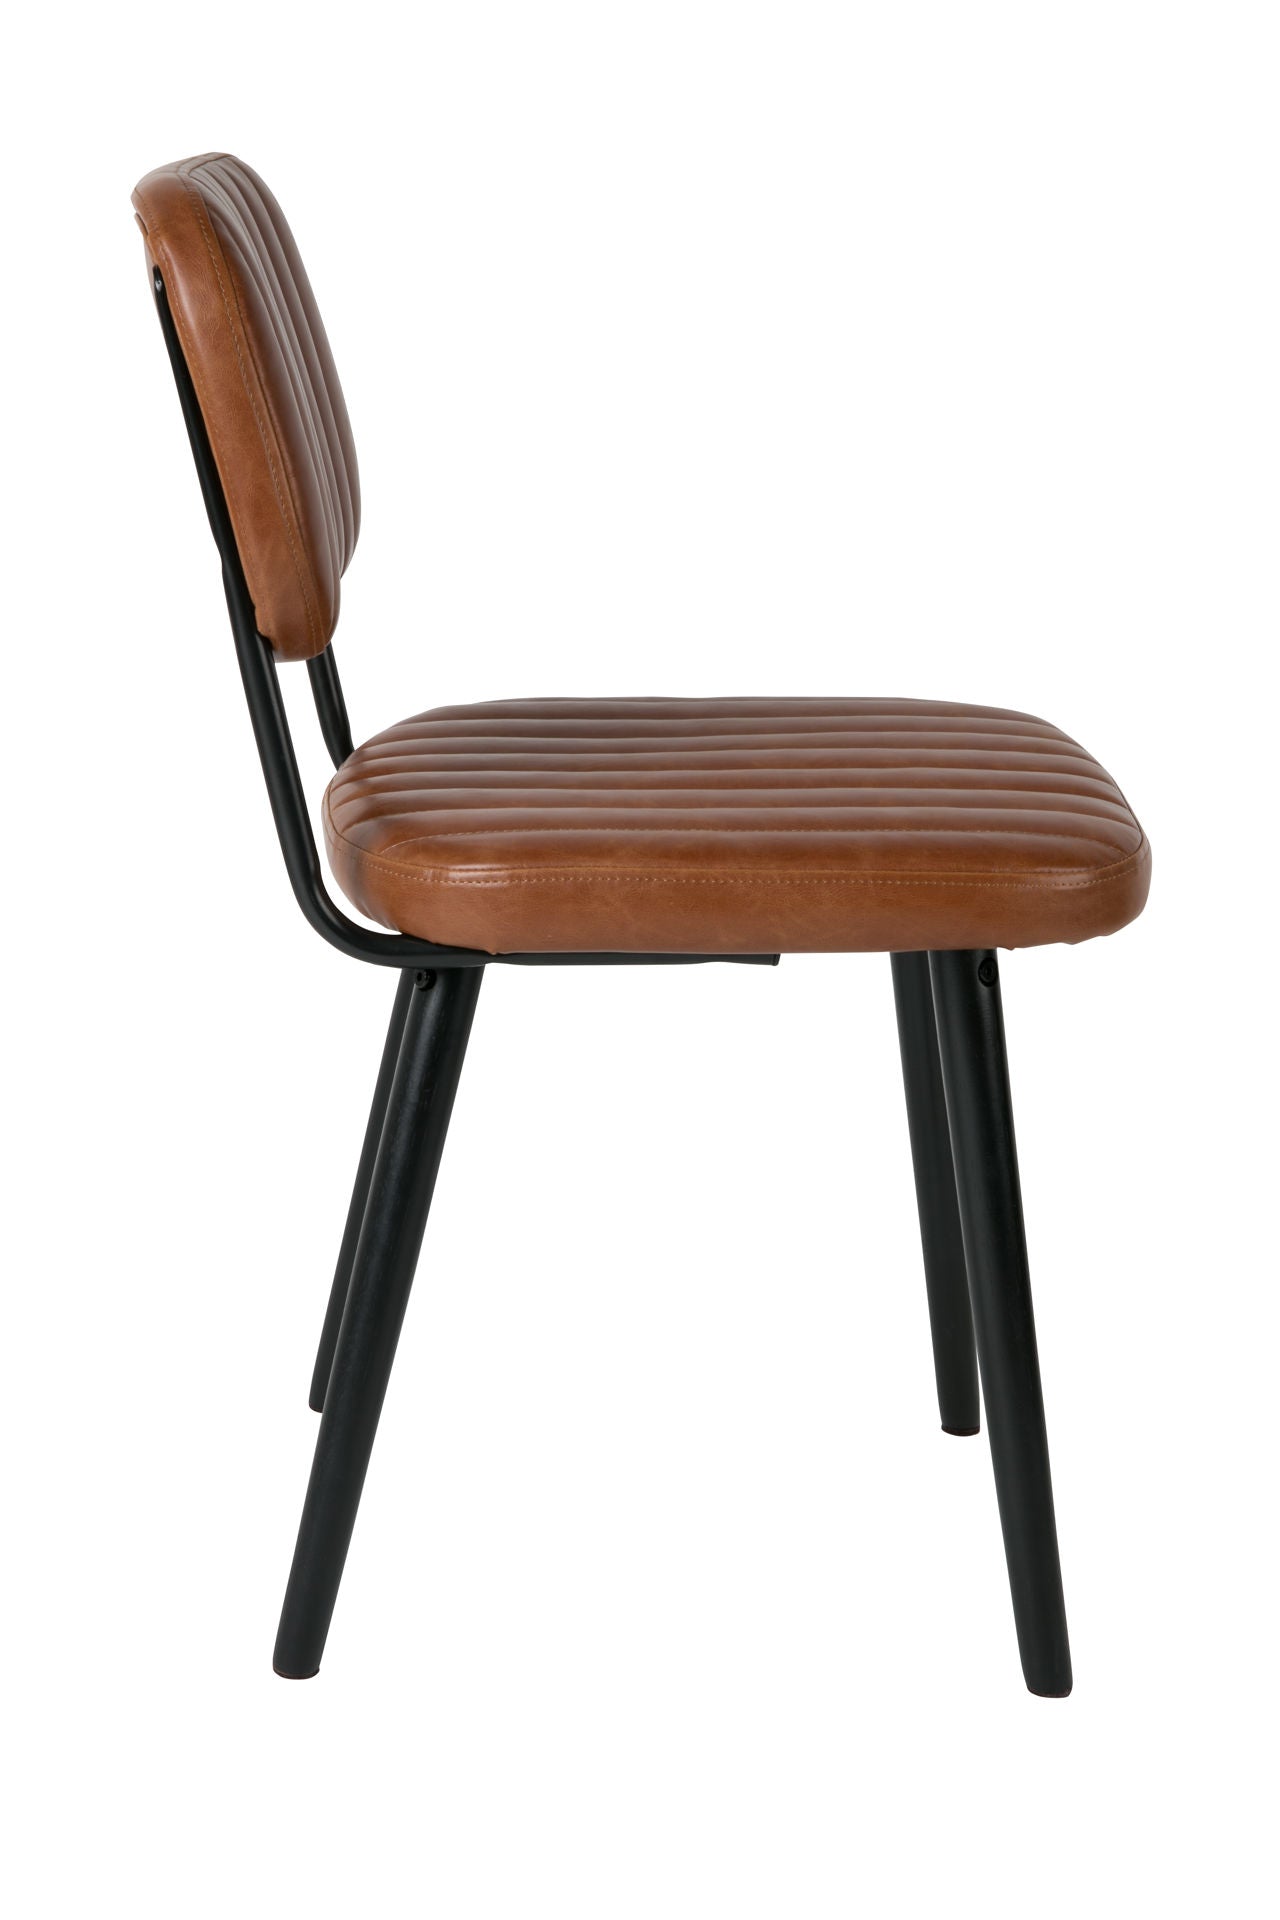 Nancy's Citrus Springs Chair - Vintage - Brown, Black - Pu Leather, Plywood, Steel - 46 cm x 22 cm x 46 cm